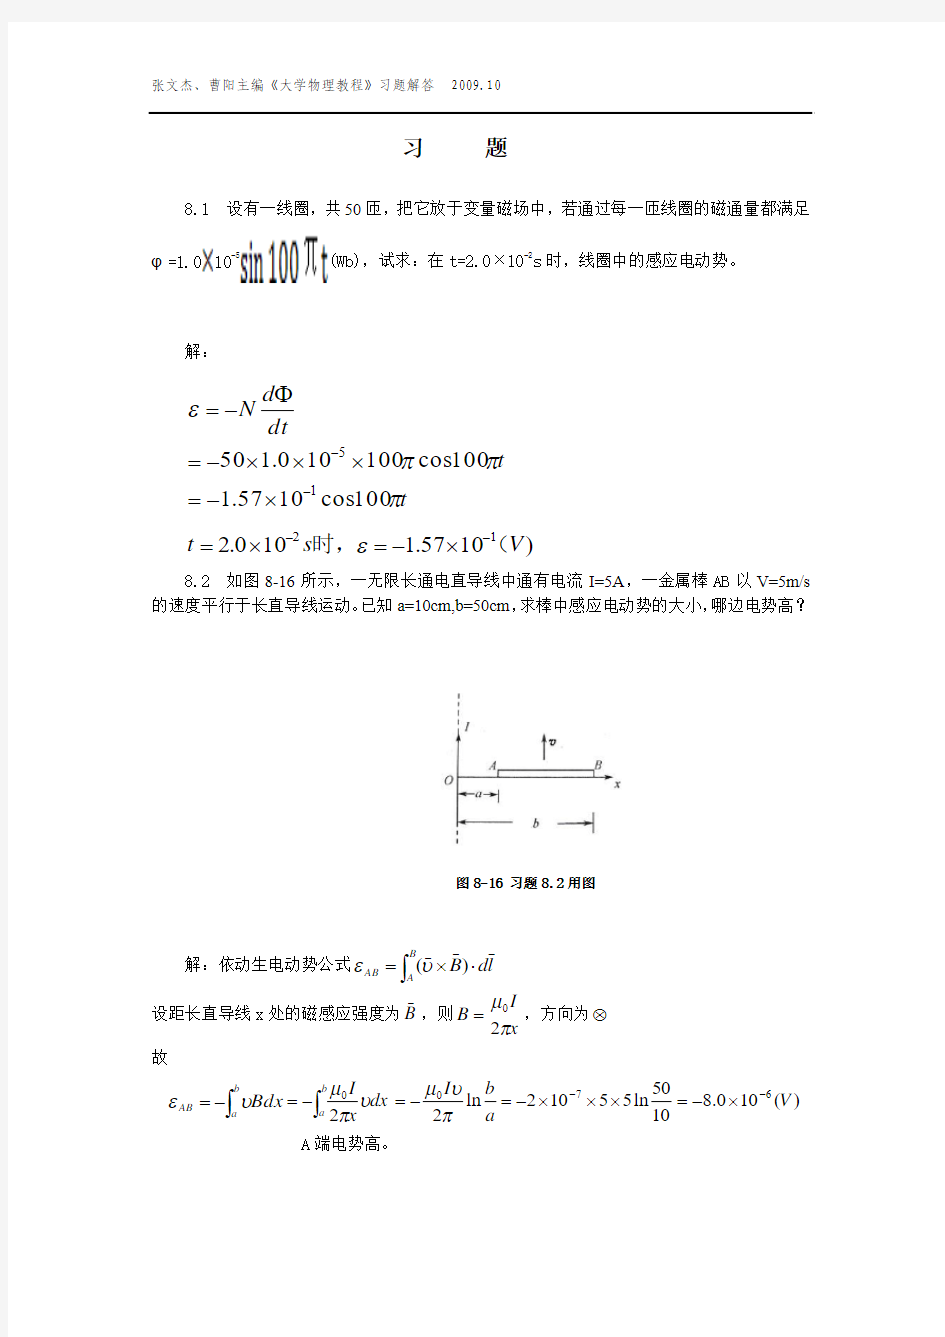 大学物理教程第8章 (张文杰 曹阳 著) 中国农业大学出版社